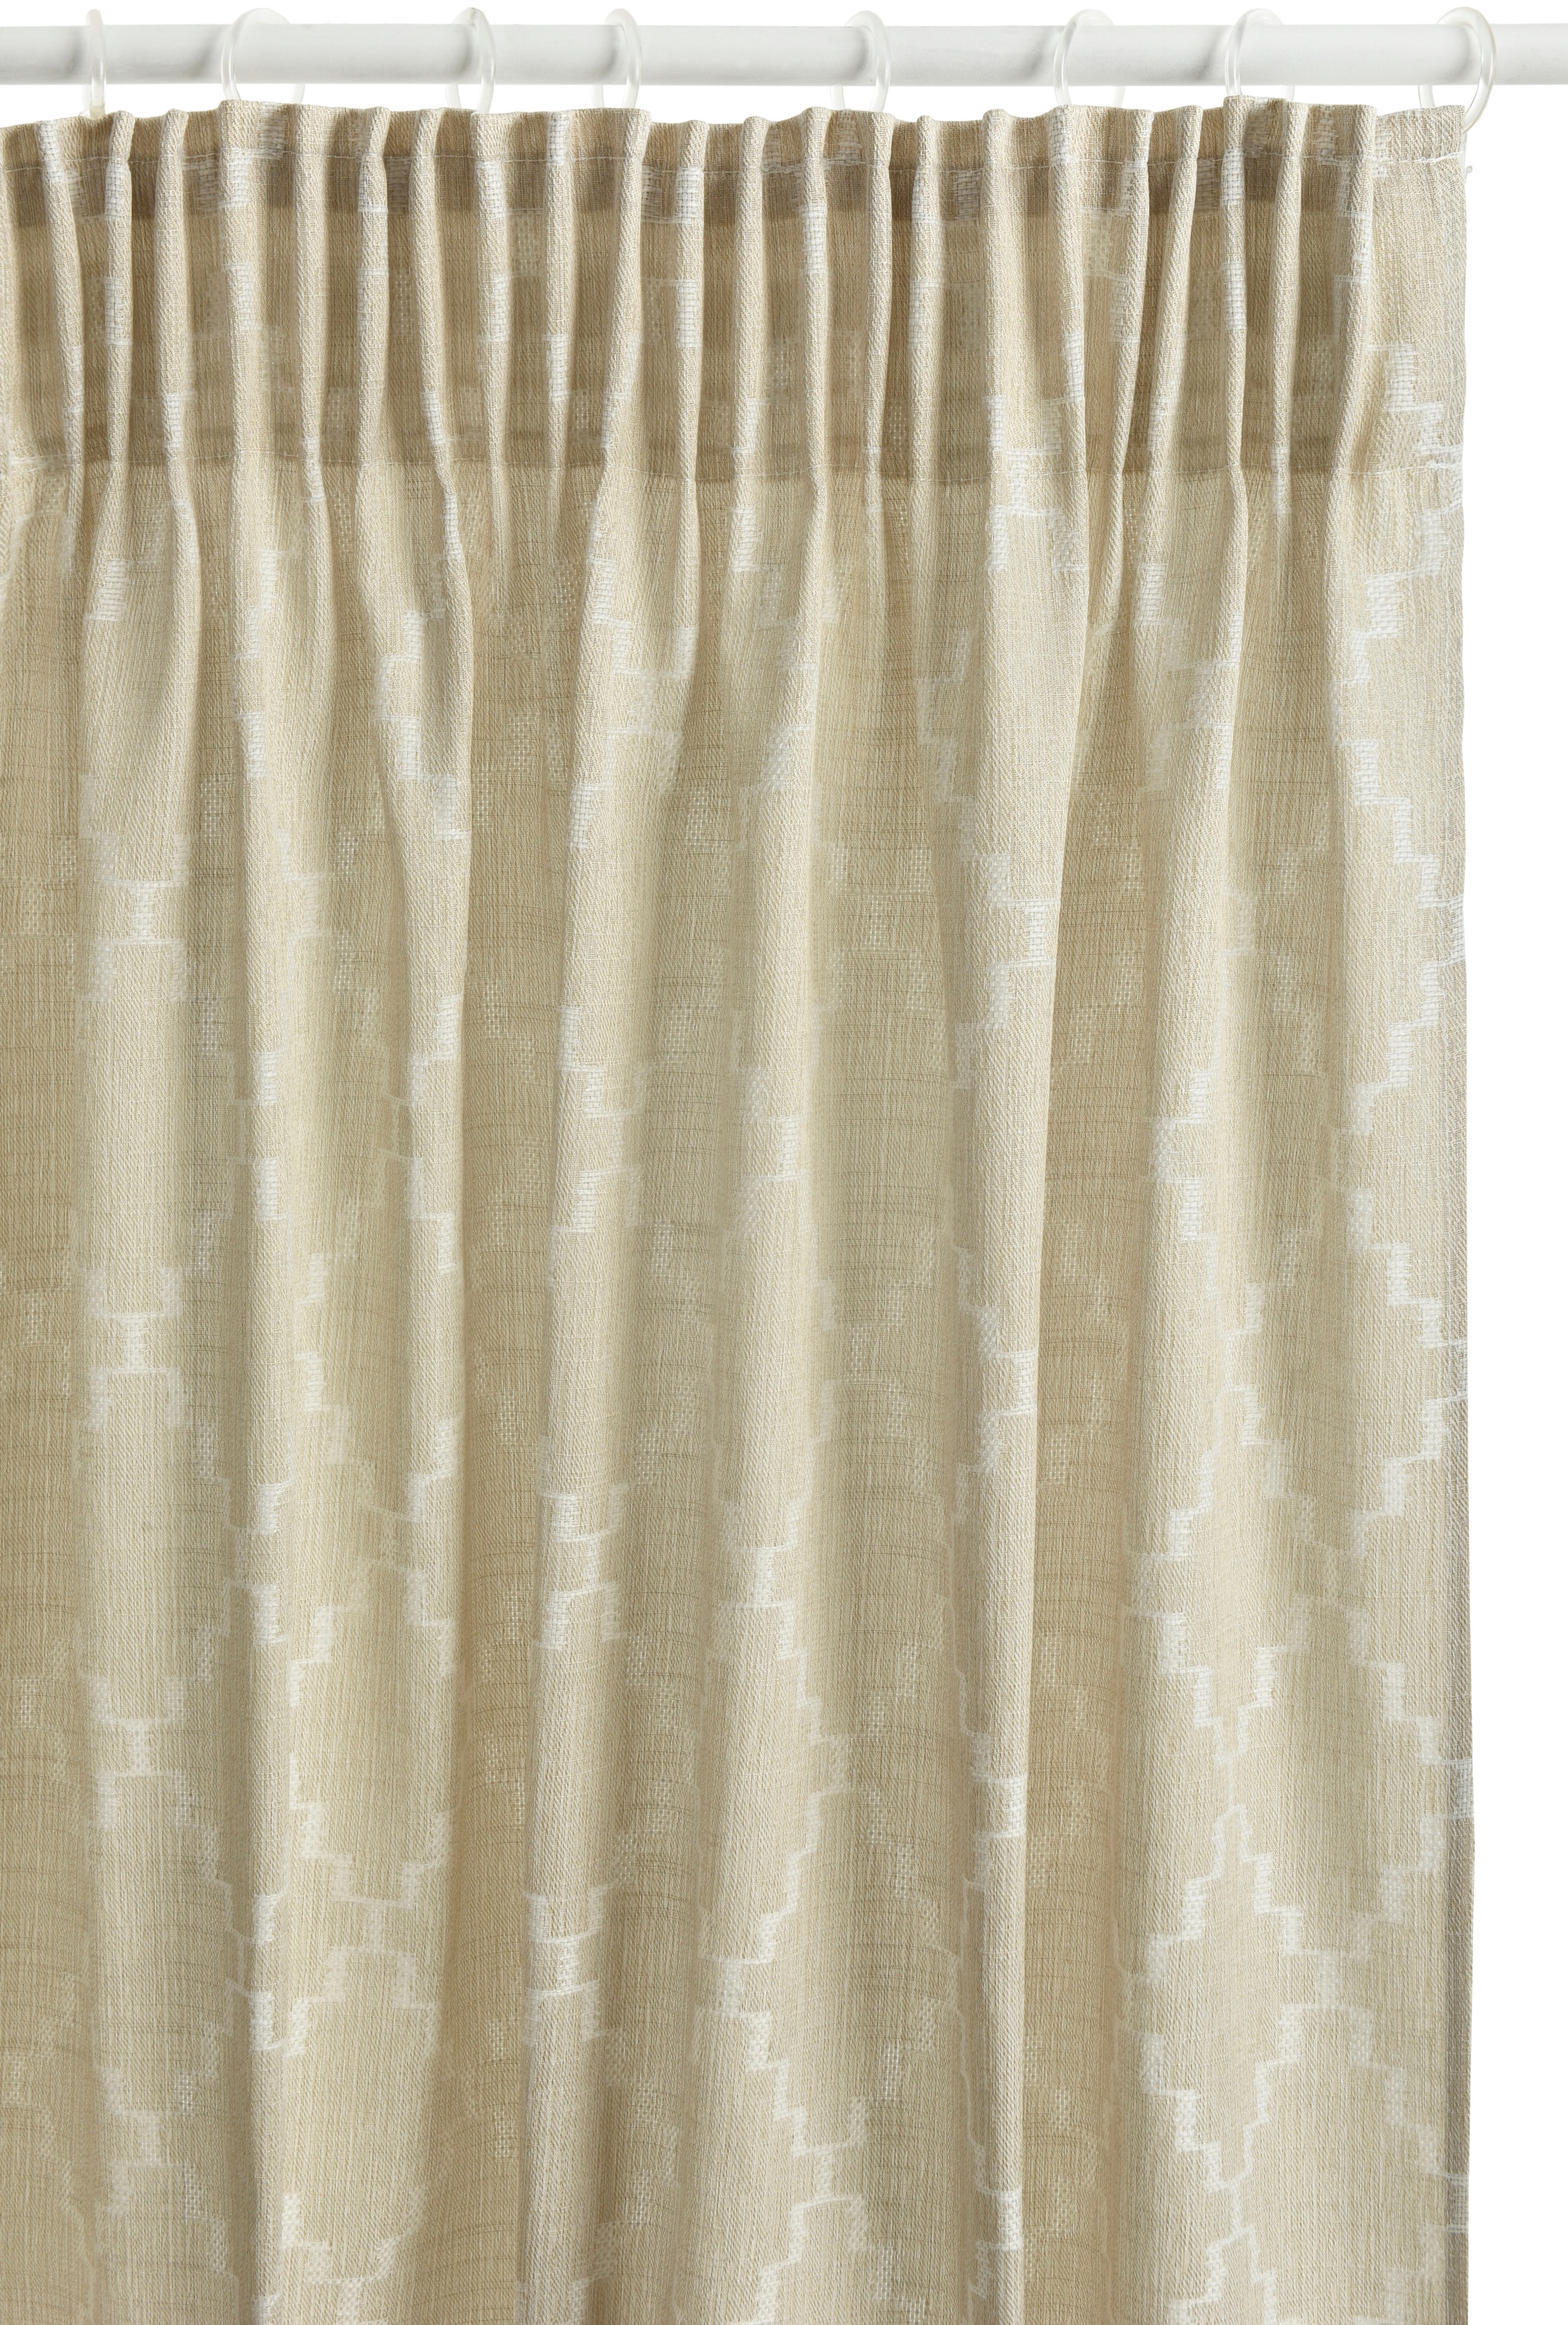 andas Vorhang »Klea«, (1 St.), verschiedene Größen kaufen blickdicht, monochrom, online